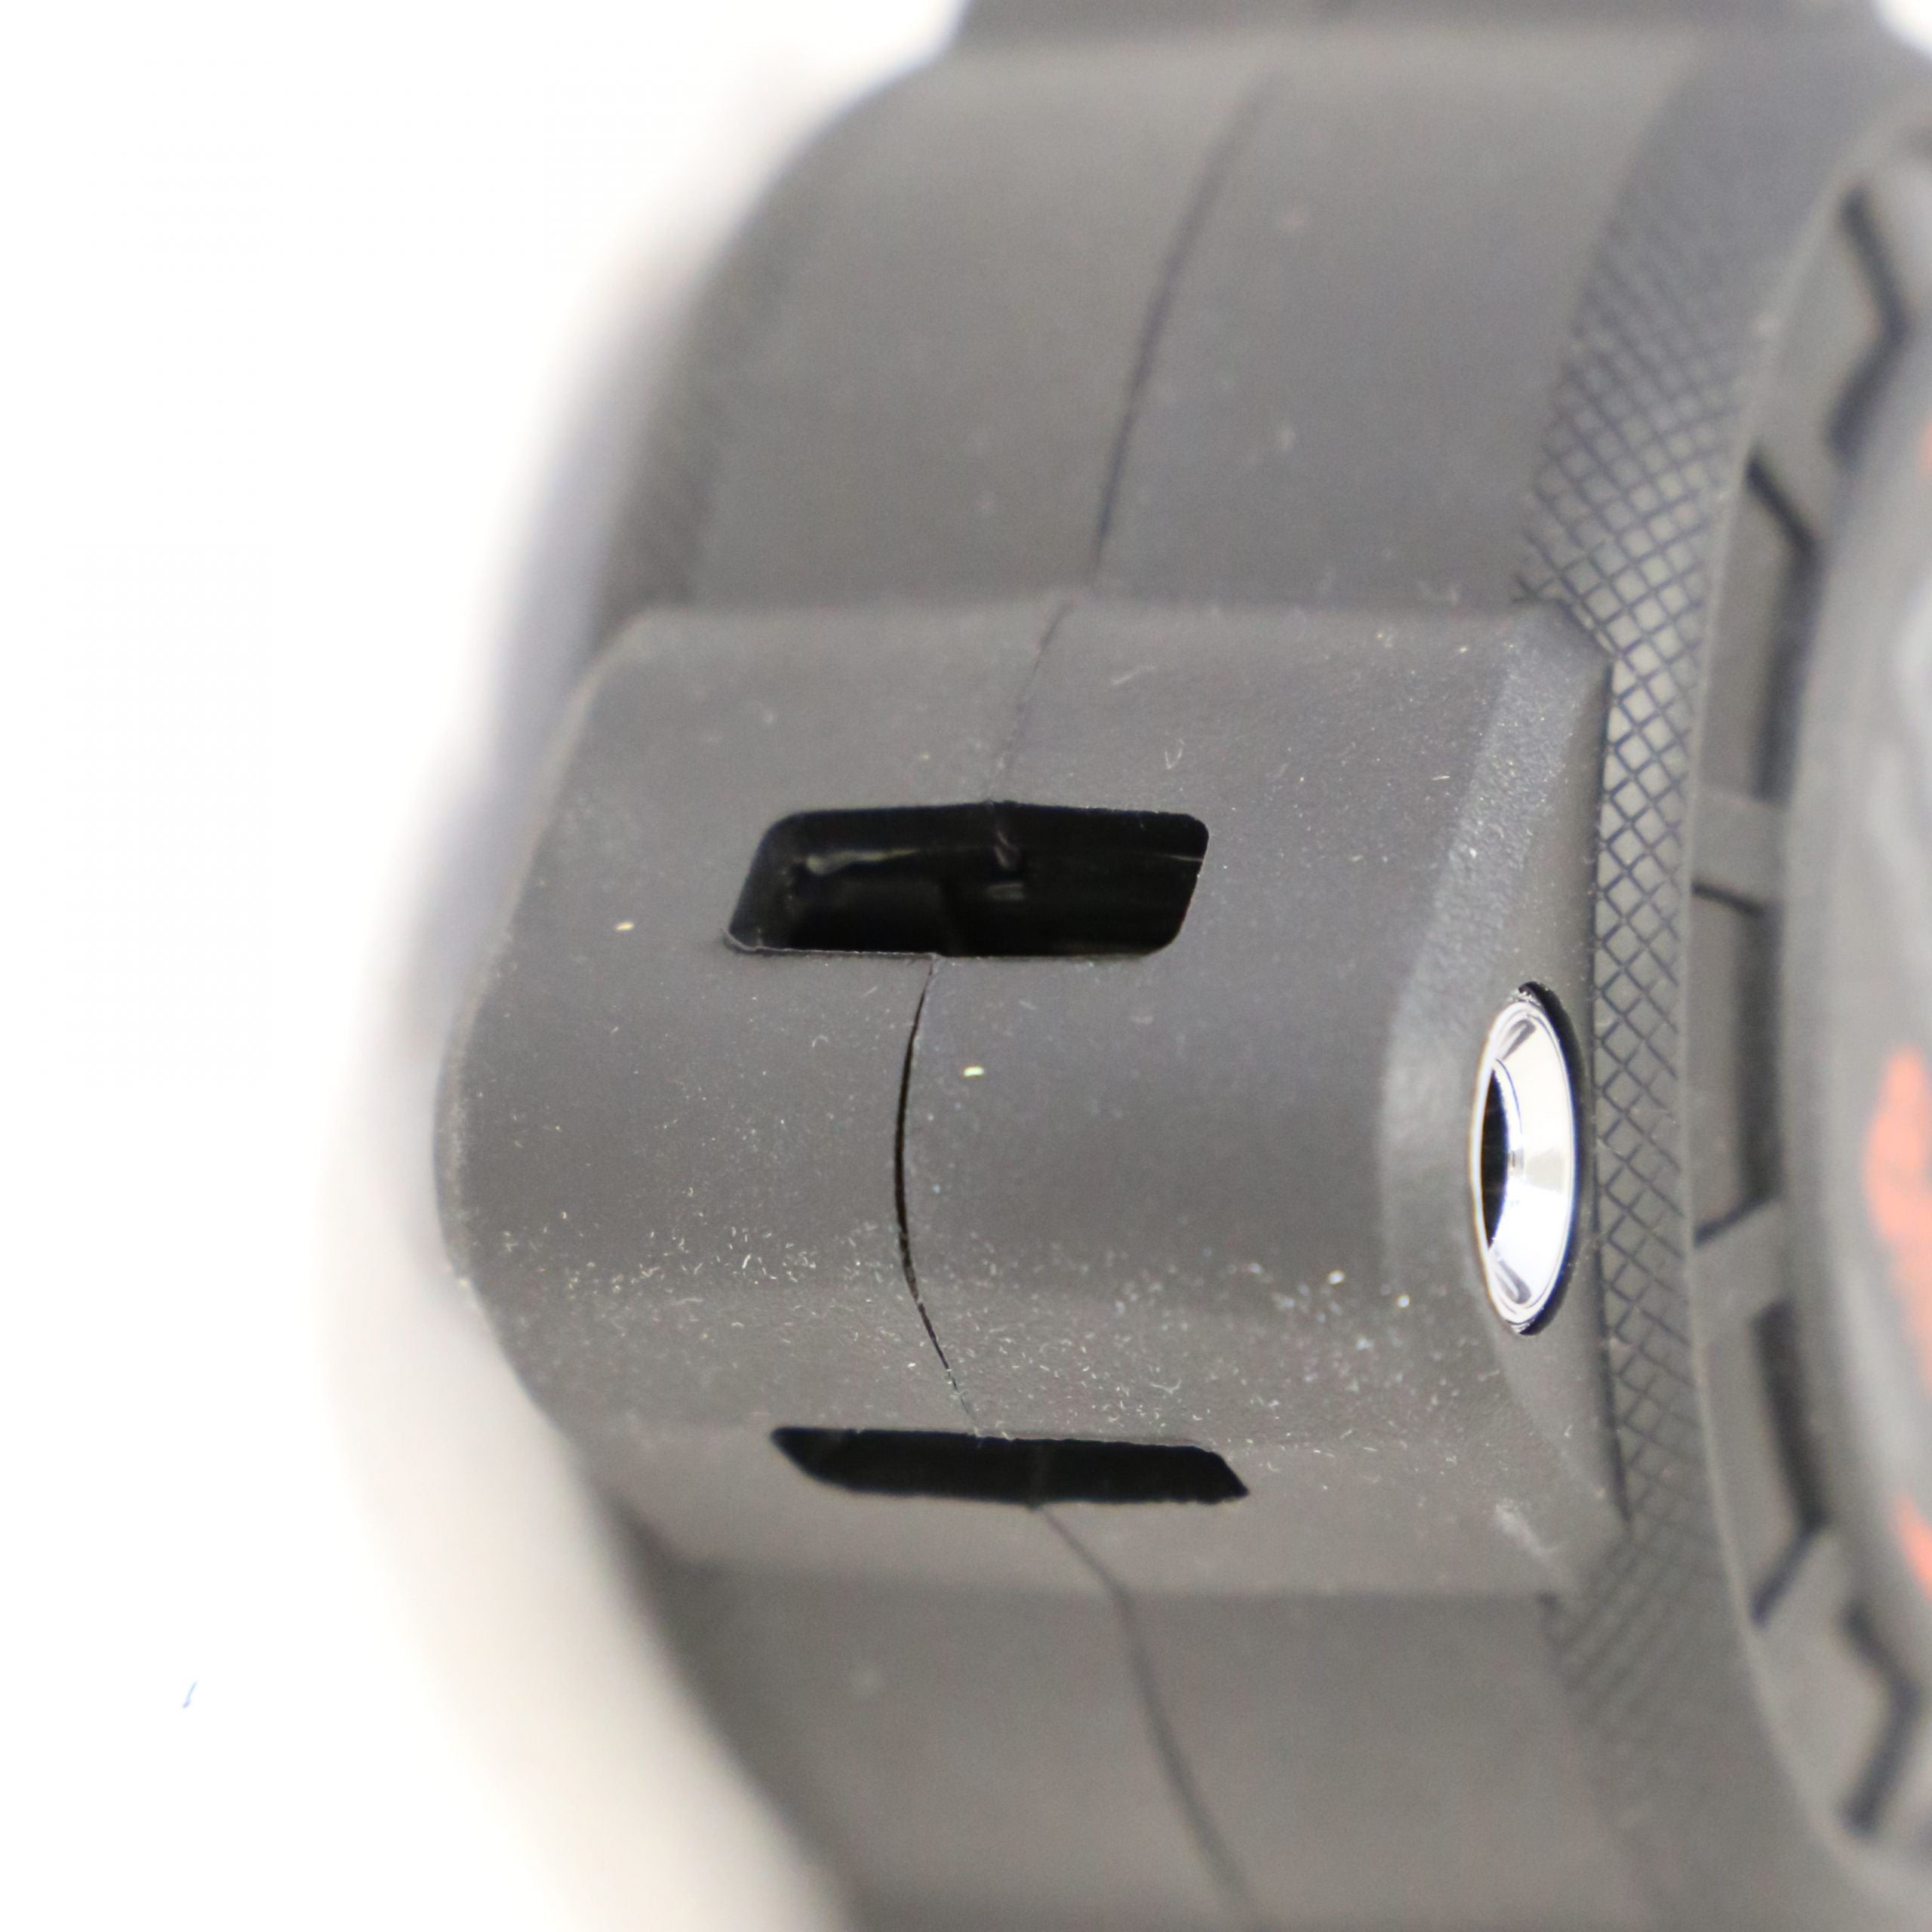 10m x 30mm Shockforce Nite Eye Tape Measure NE1030M by Lufkin